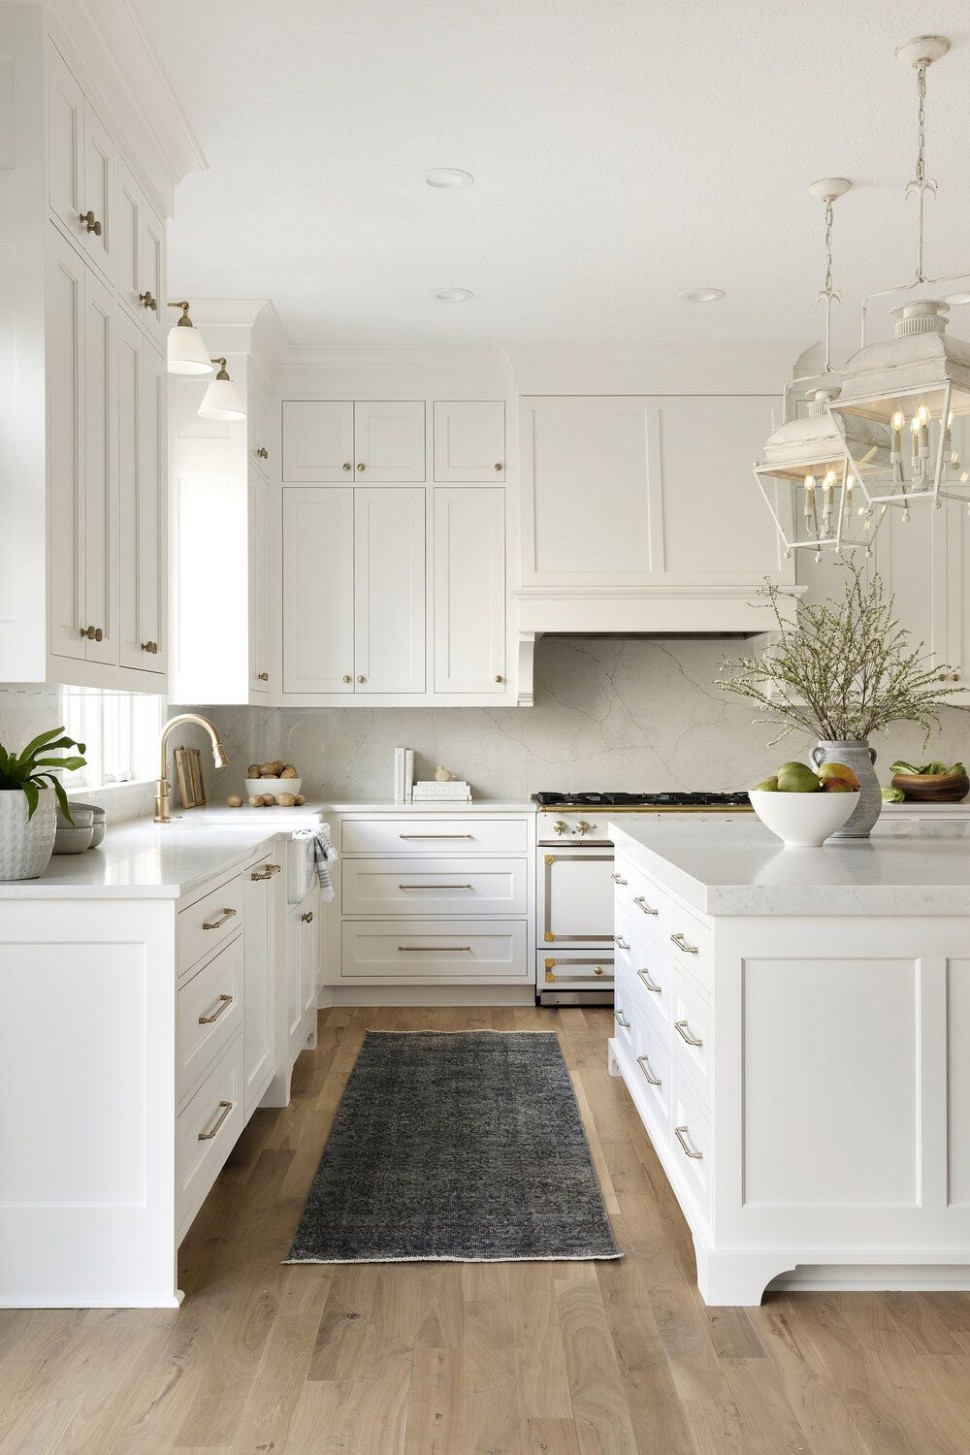 5 White Kitchen Cabinets Inspiration ideas in 5  kitchen  - white kitchens pinterest